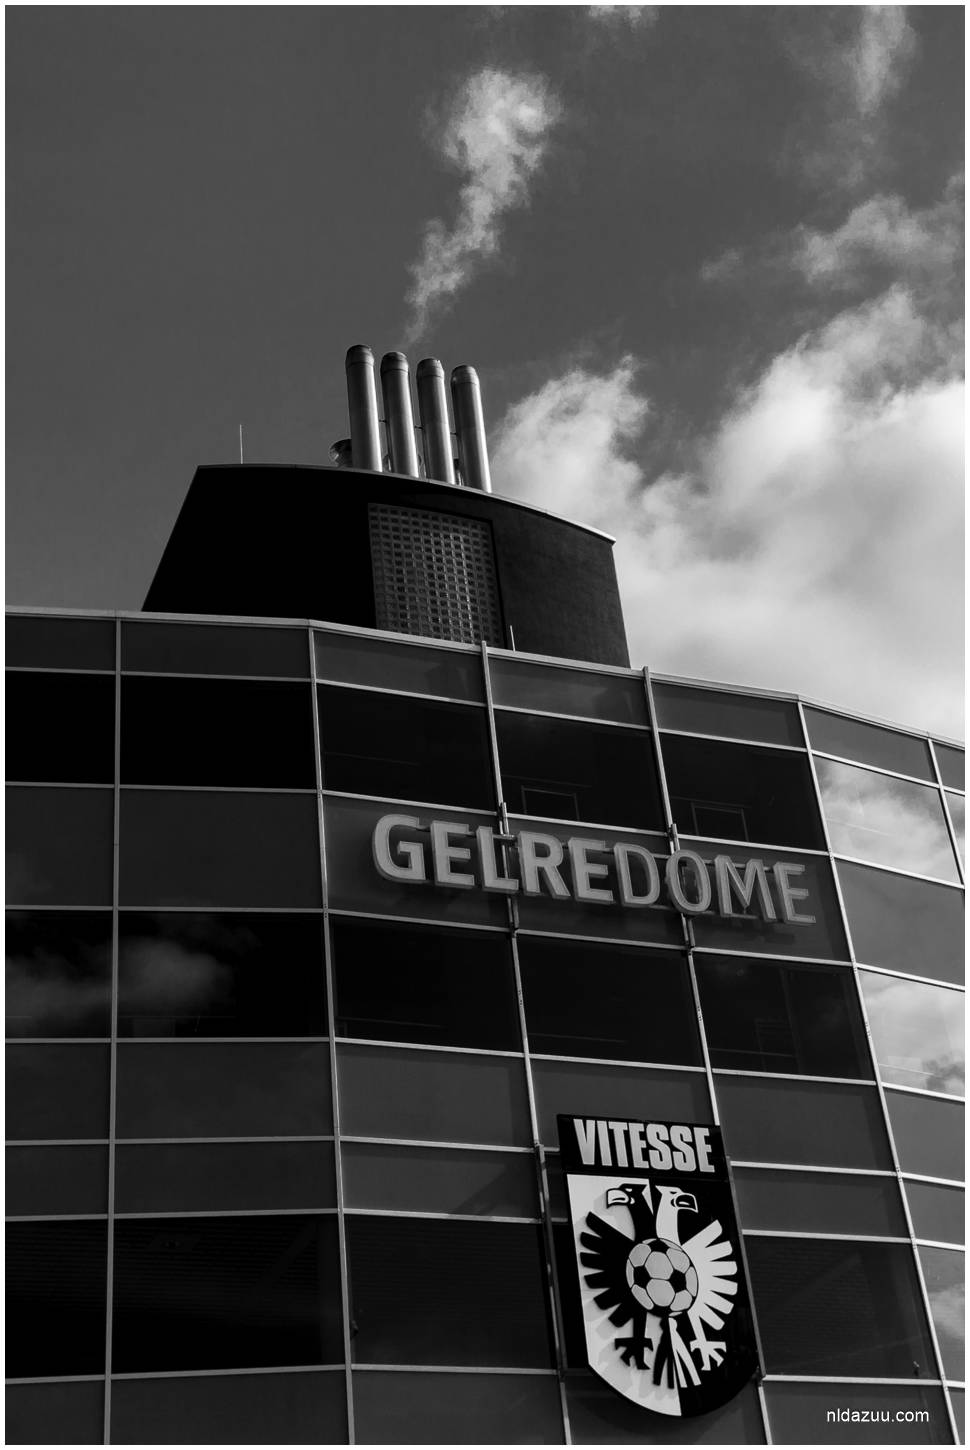 Arnhem, dave zuuring, Gelderland, Gelredome, nldazuufotografeert.com, stadion, Vitesse